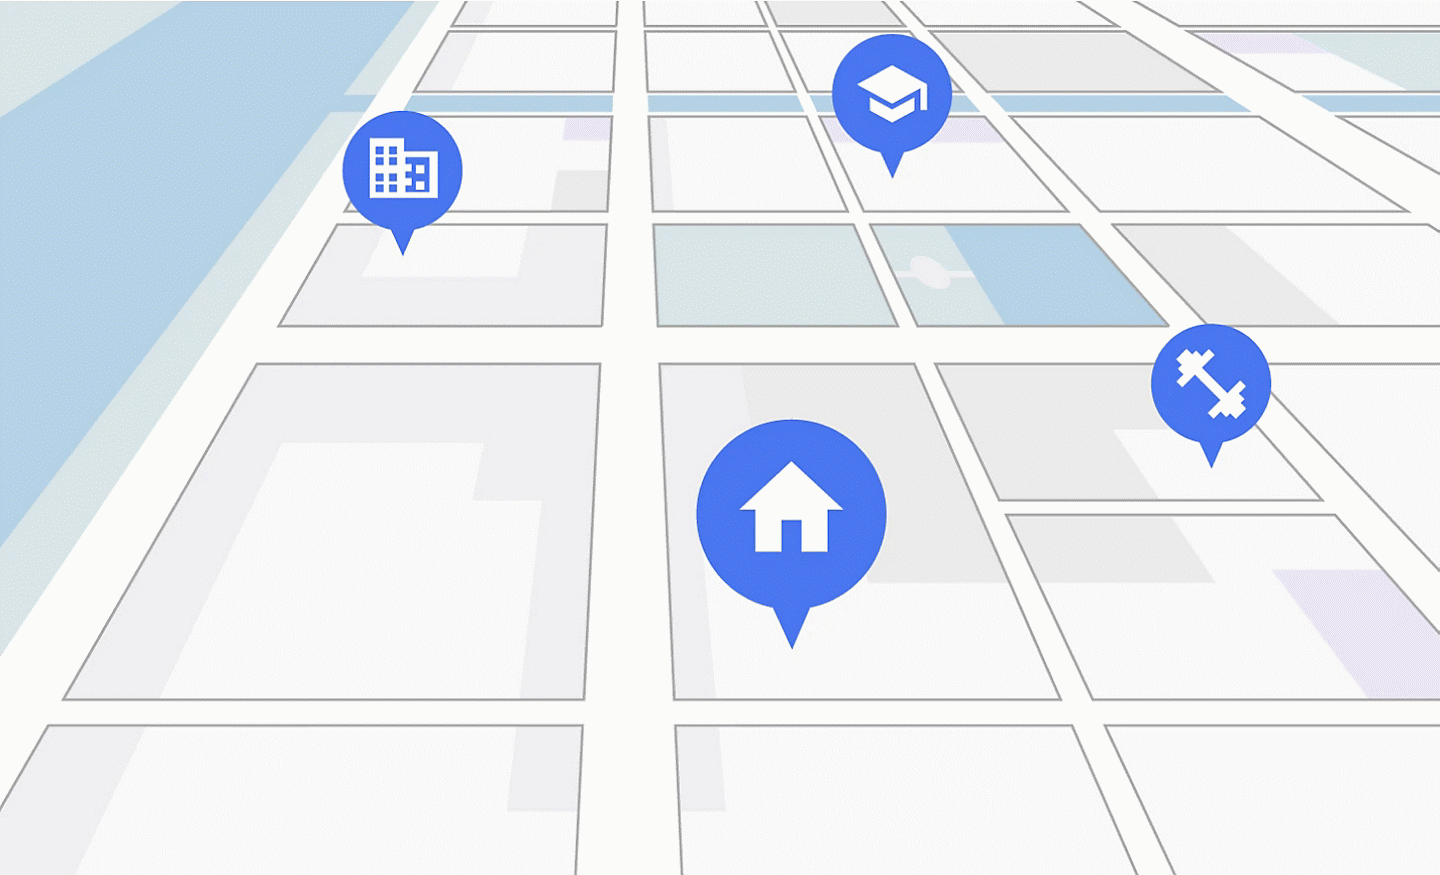 Plan de rue de style GPS montrant les lieux d'intérêt